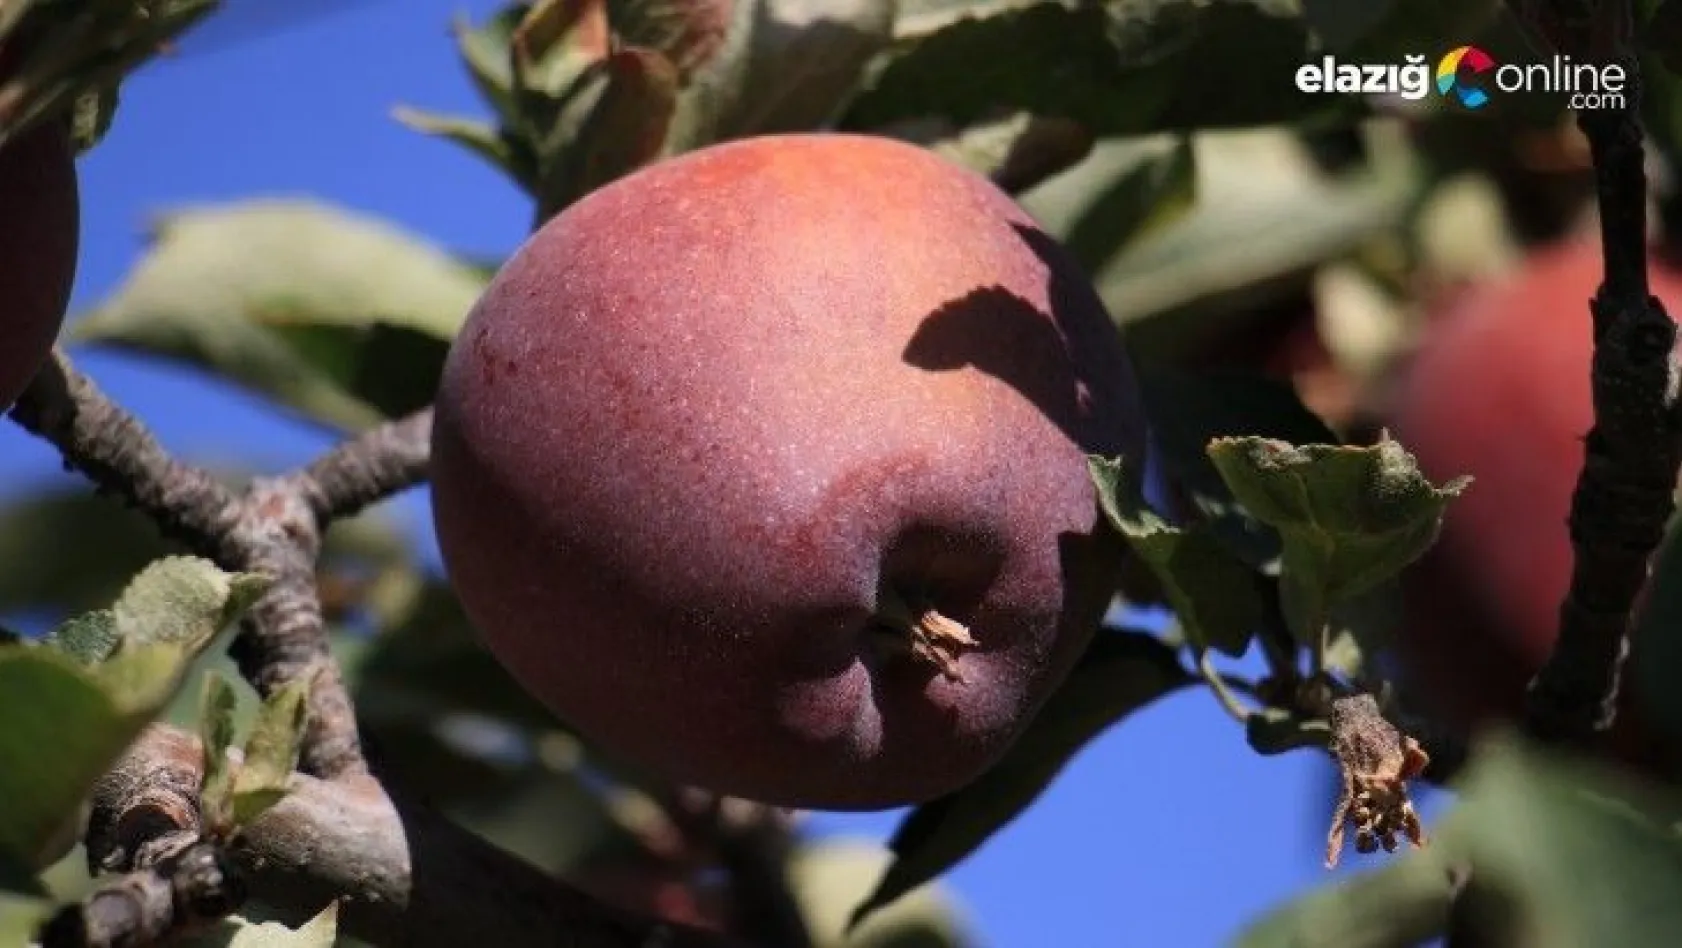 Bir çok tarım ürünü ile ön plana çıkan Elazığ'da, kırmızı elmanın hasadı başladı